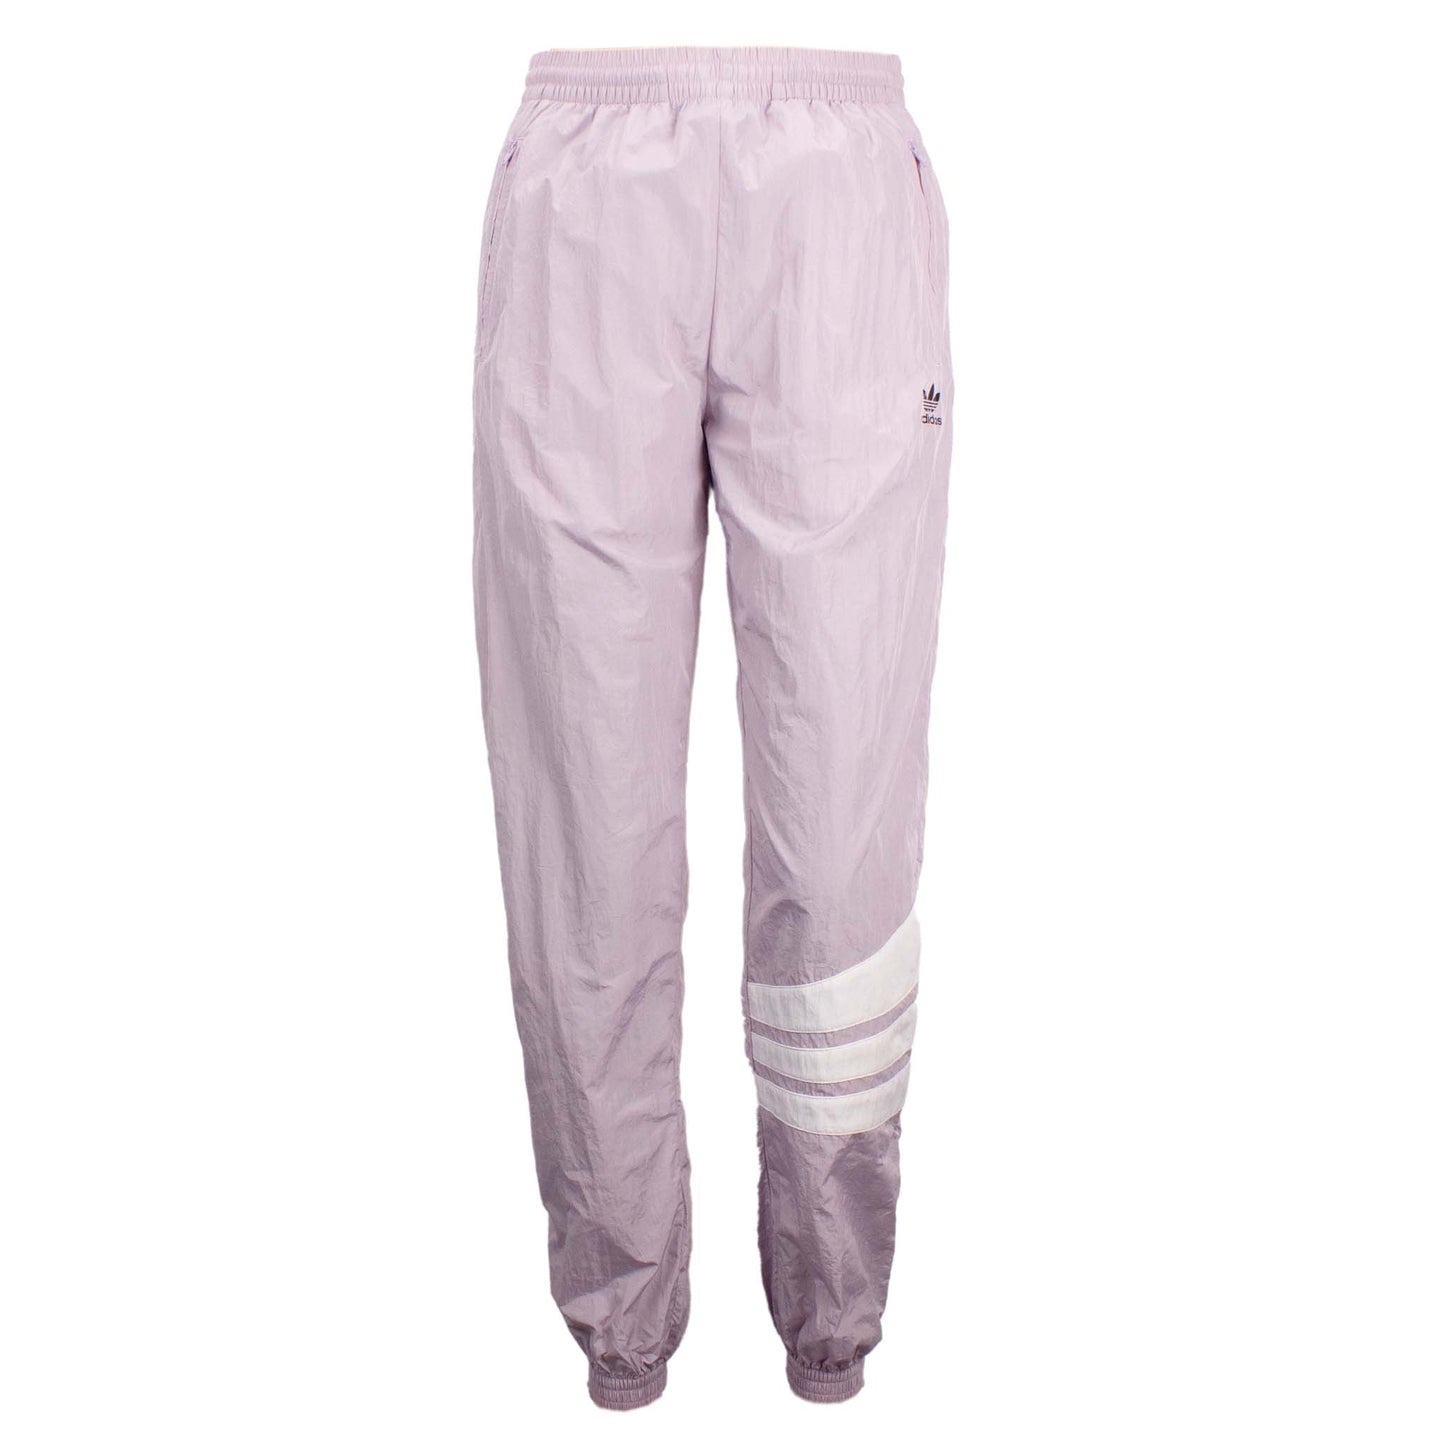 Adidas Originals Cuffed Pants Damen Hose Sporthose Jogging Violett DU9603 Gr. 34 - Brand Dealers Arena e.K. - BDA24